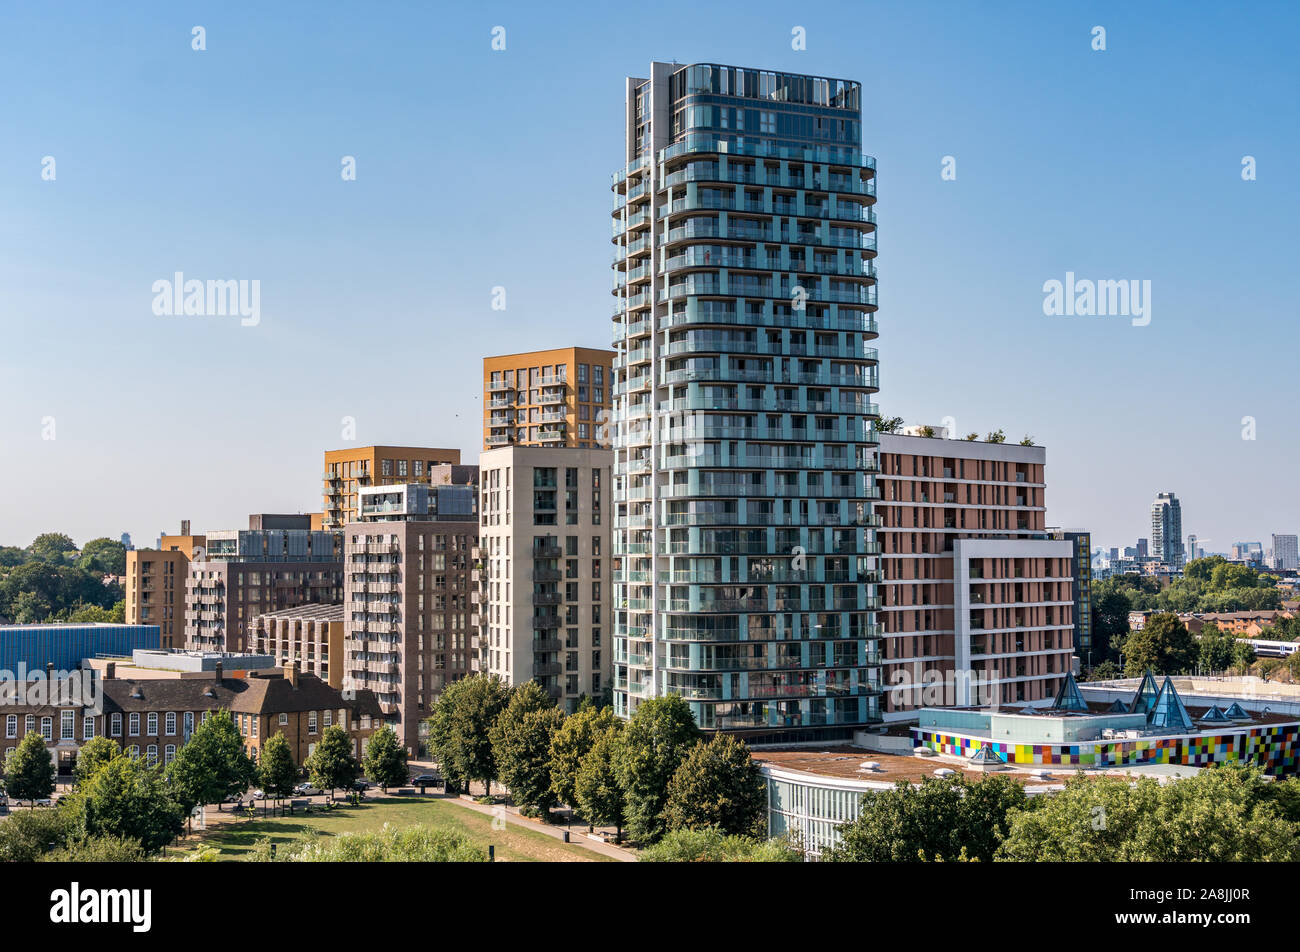 Londres, Reino Unido - El 26 de agosto de 2019: perfil de Londres desde Lewisham Shopping Center mostrando el renacimiento complejo de apartamentos en primer plano Foto de stock